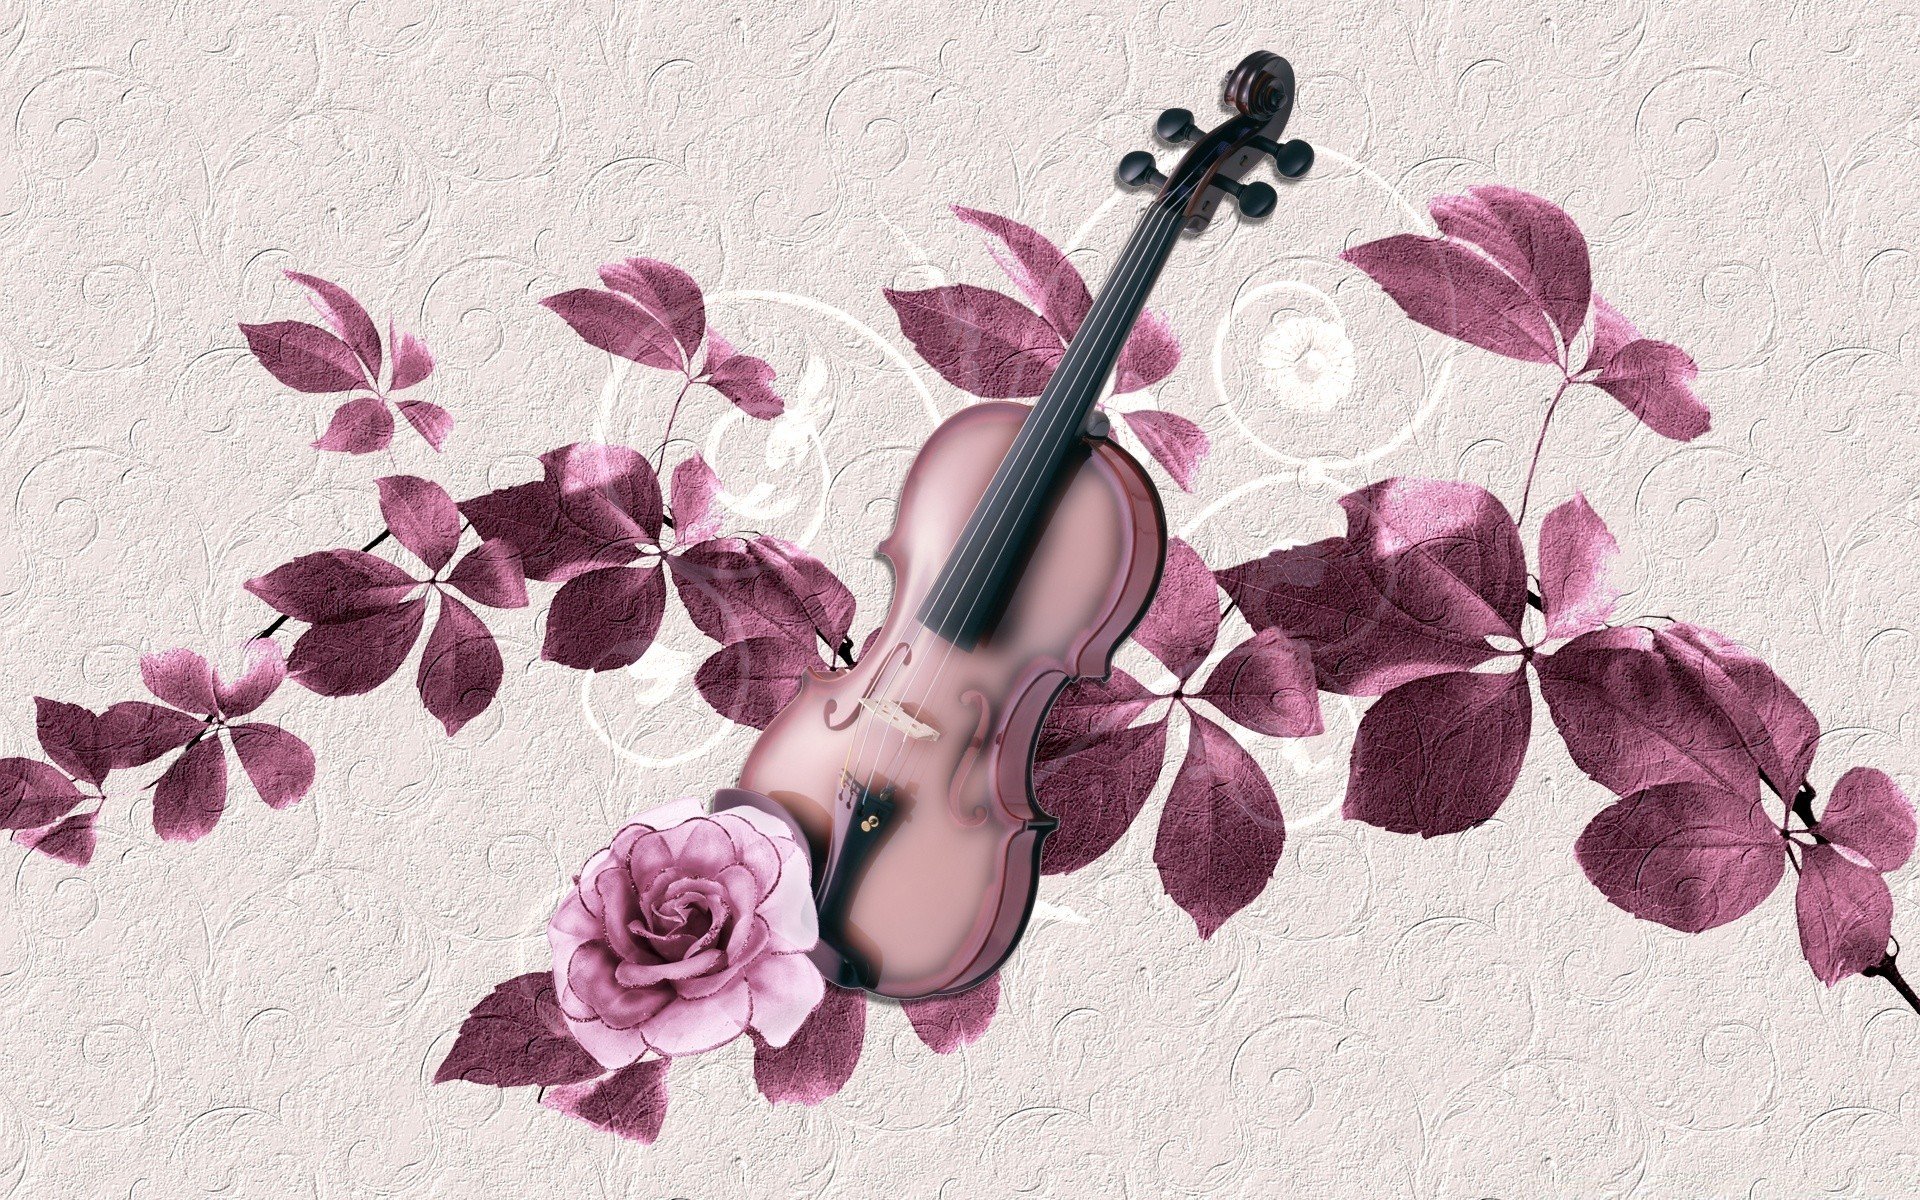 Музыка на фоне песня. Музыкальные инструменты и цветы. Музыкальный фон. Фотообои музыкальные. Скрипка на фоне цветов.